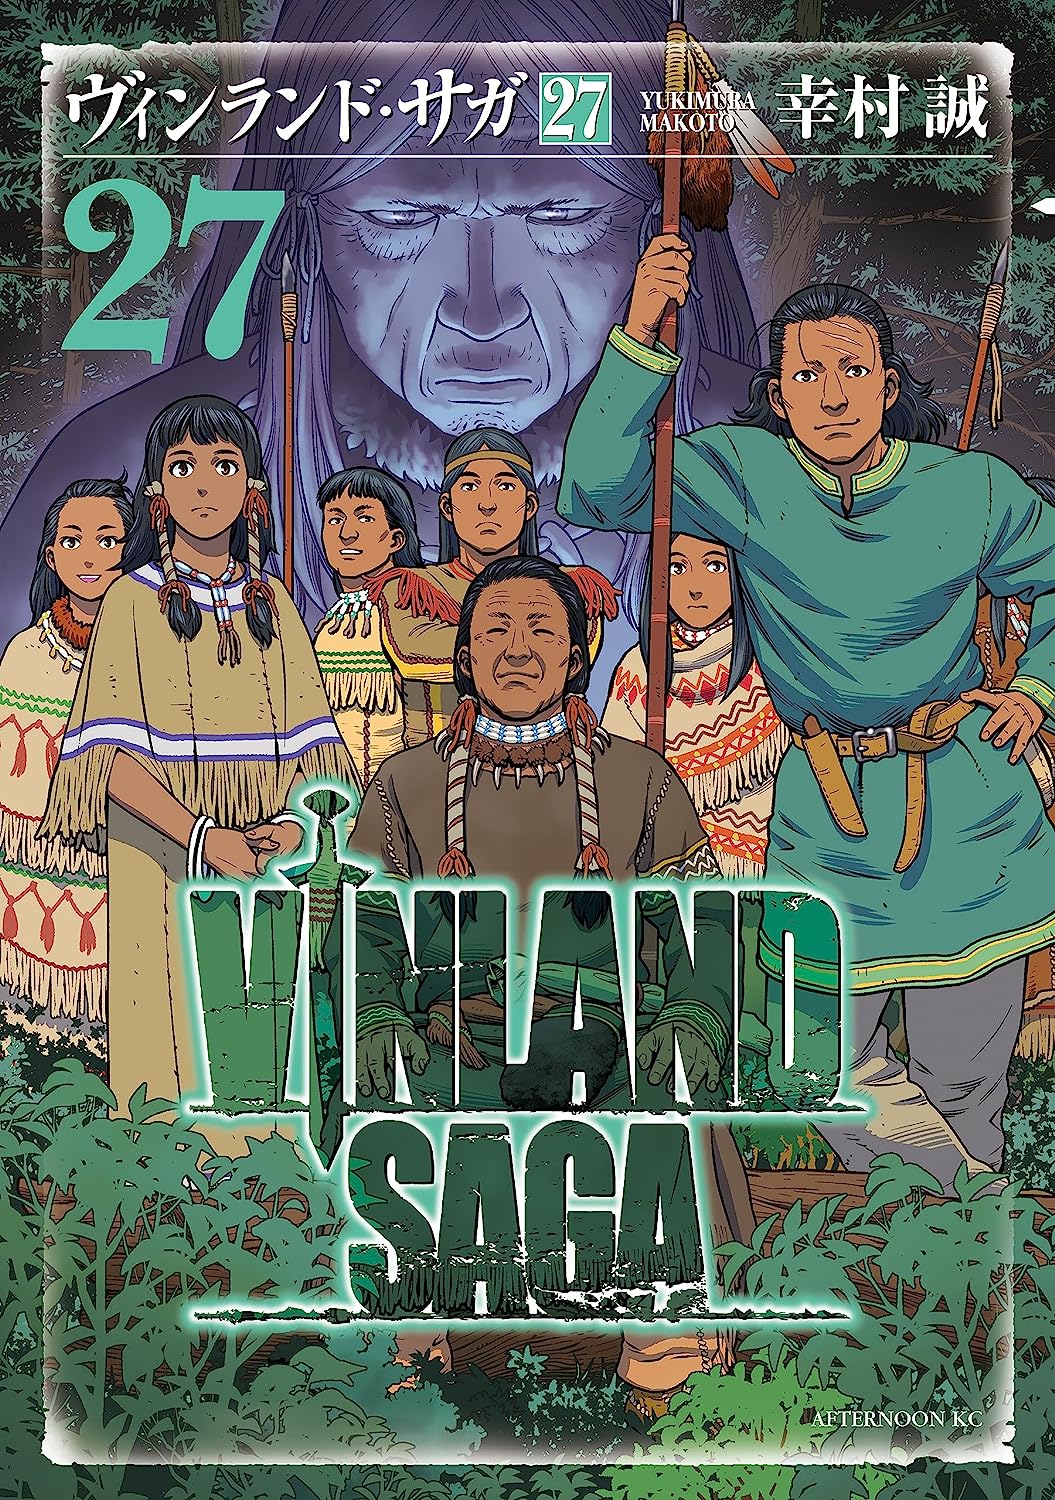 Vinland Saga Deluxe - 13